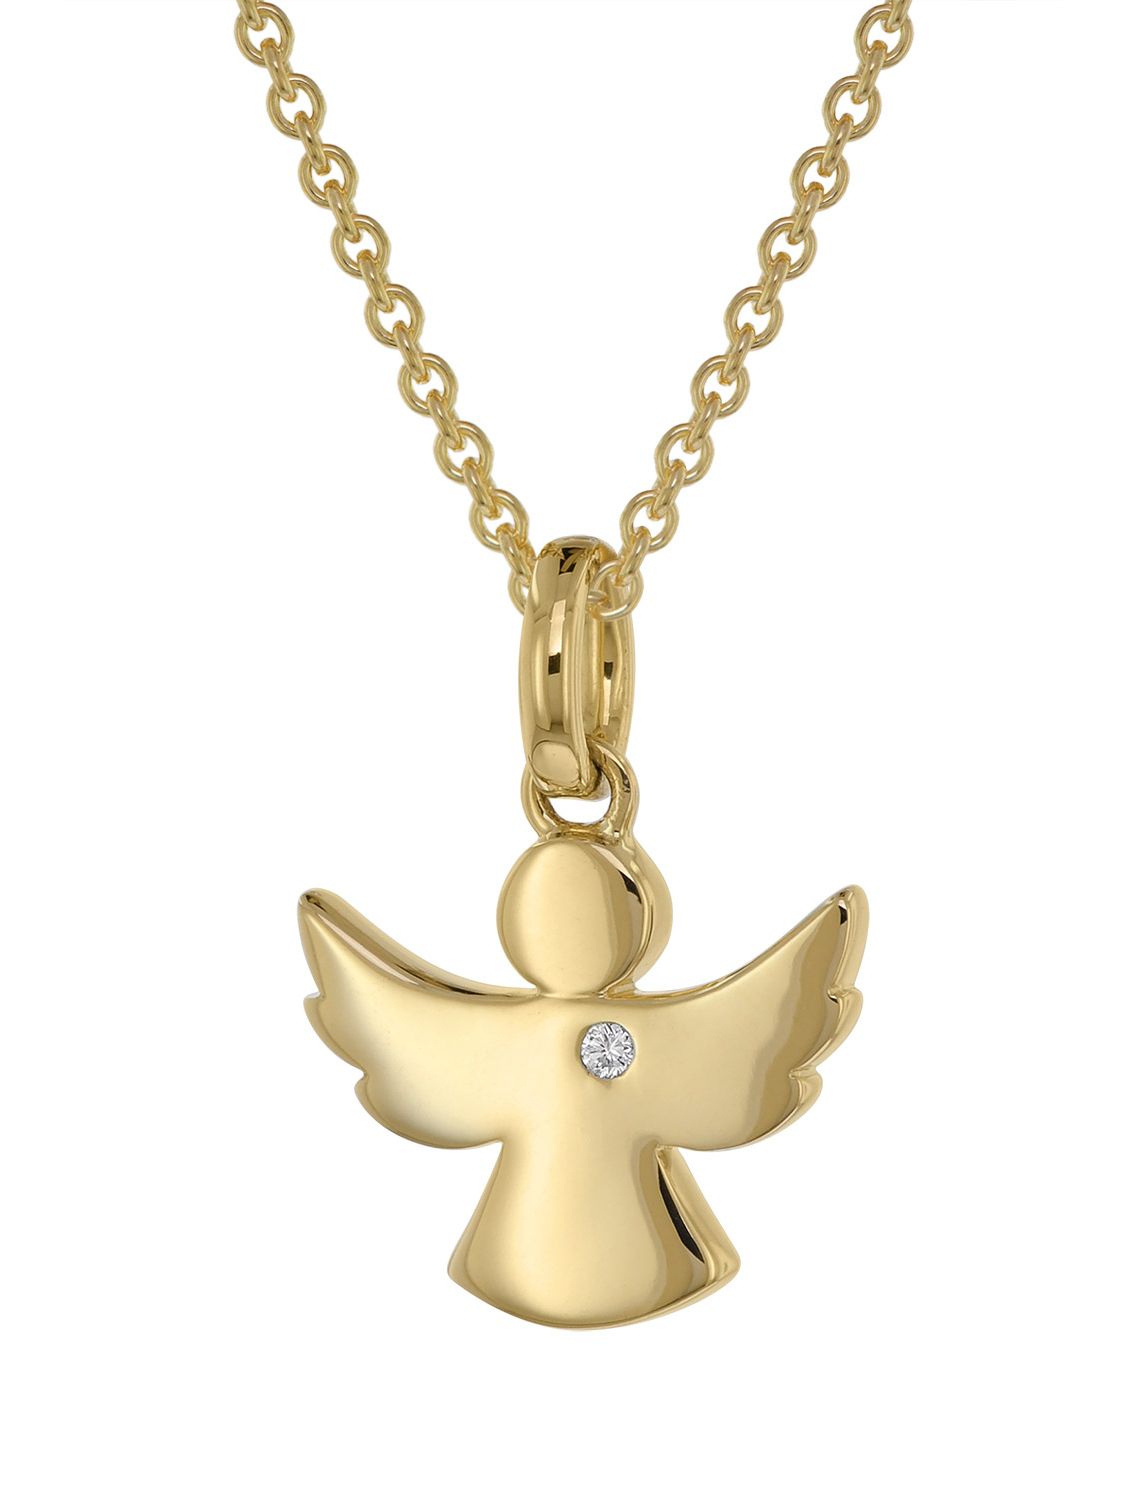 Baby Kinder Schutz Engel mit Kreuz Echt Gold 585 mit Silber Kette 925 vergoldet 